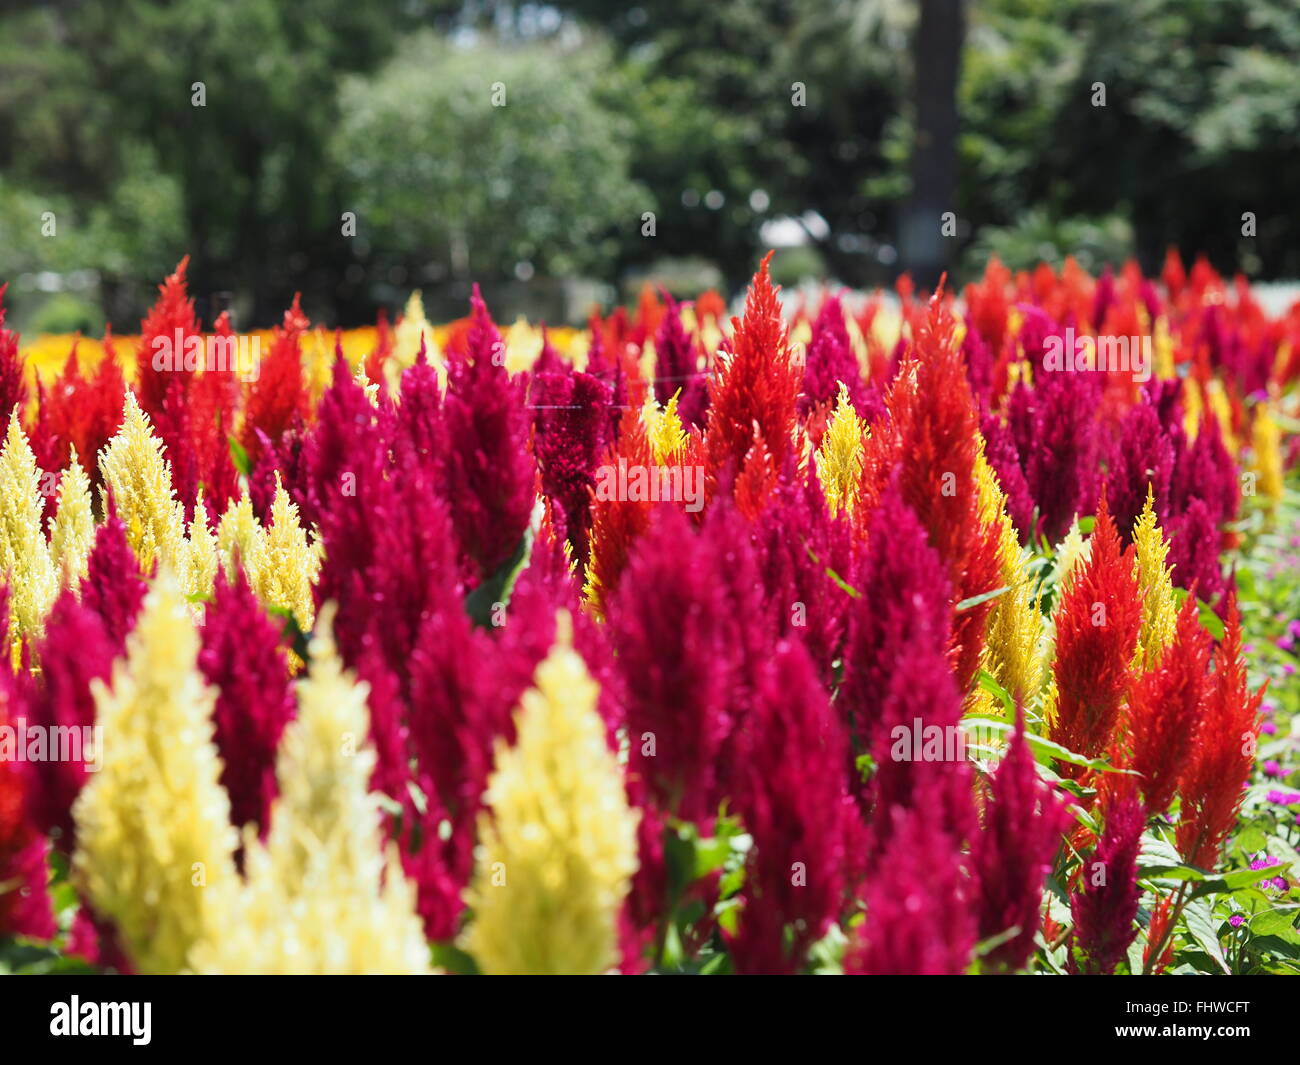 Rot, lila und weißen Blüten im Garten Bett im großen Garten oder Park-Einstellung mit Platz für header Stockfoto